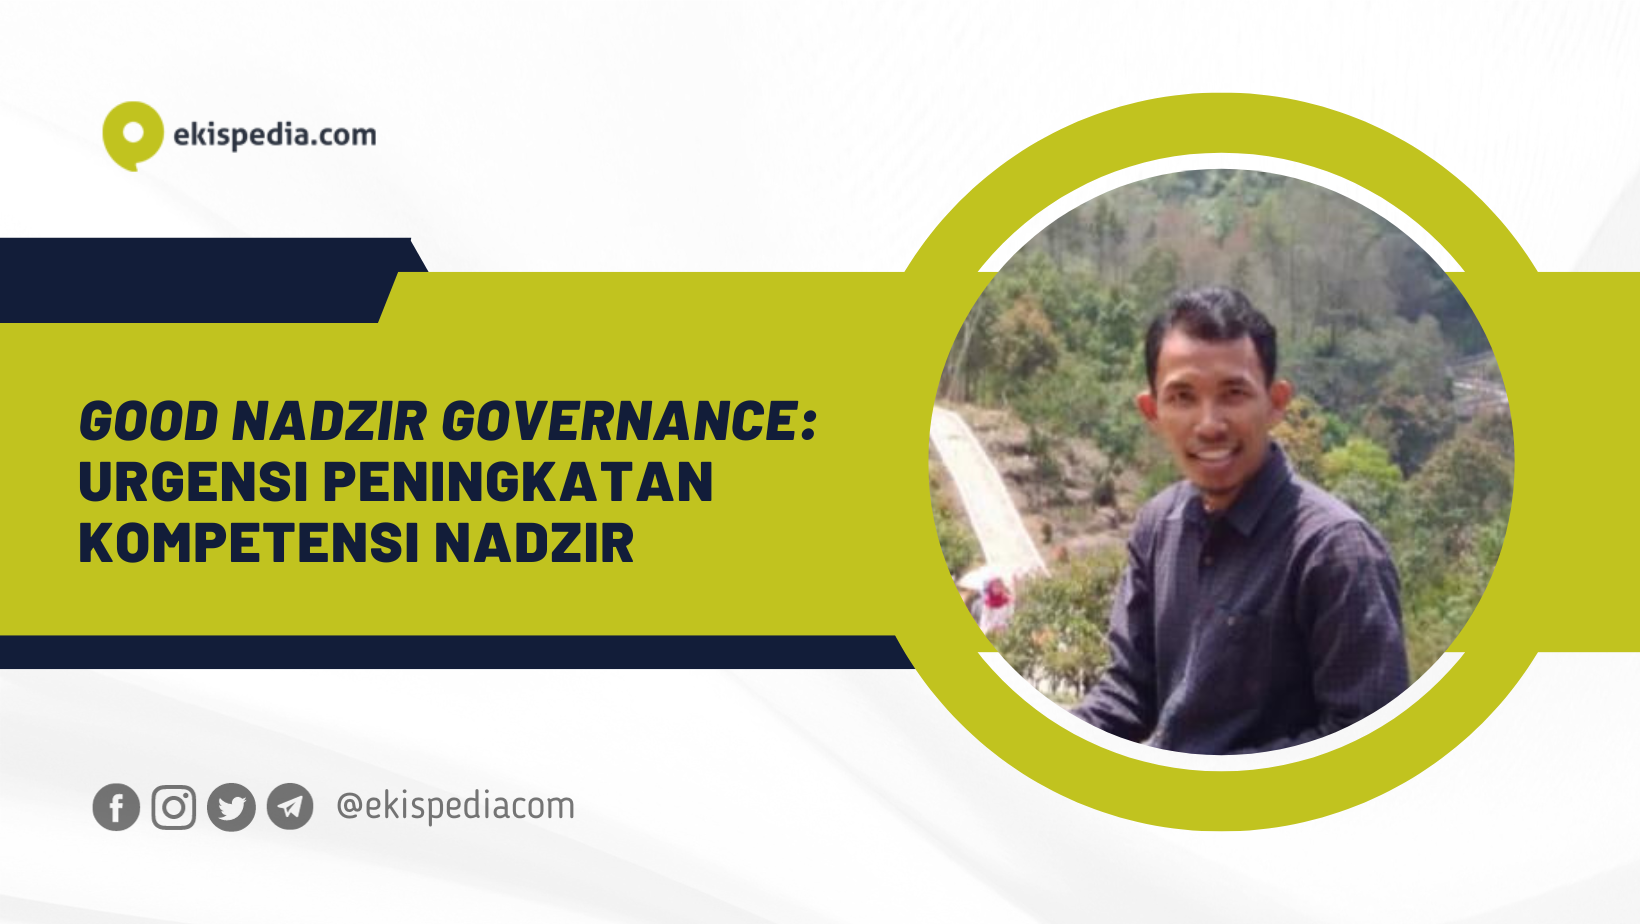 Good Nadzir Governance: Urgensi Peningkatan Kompetensi Nadzir